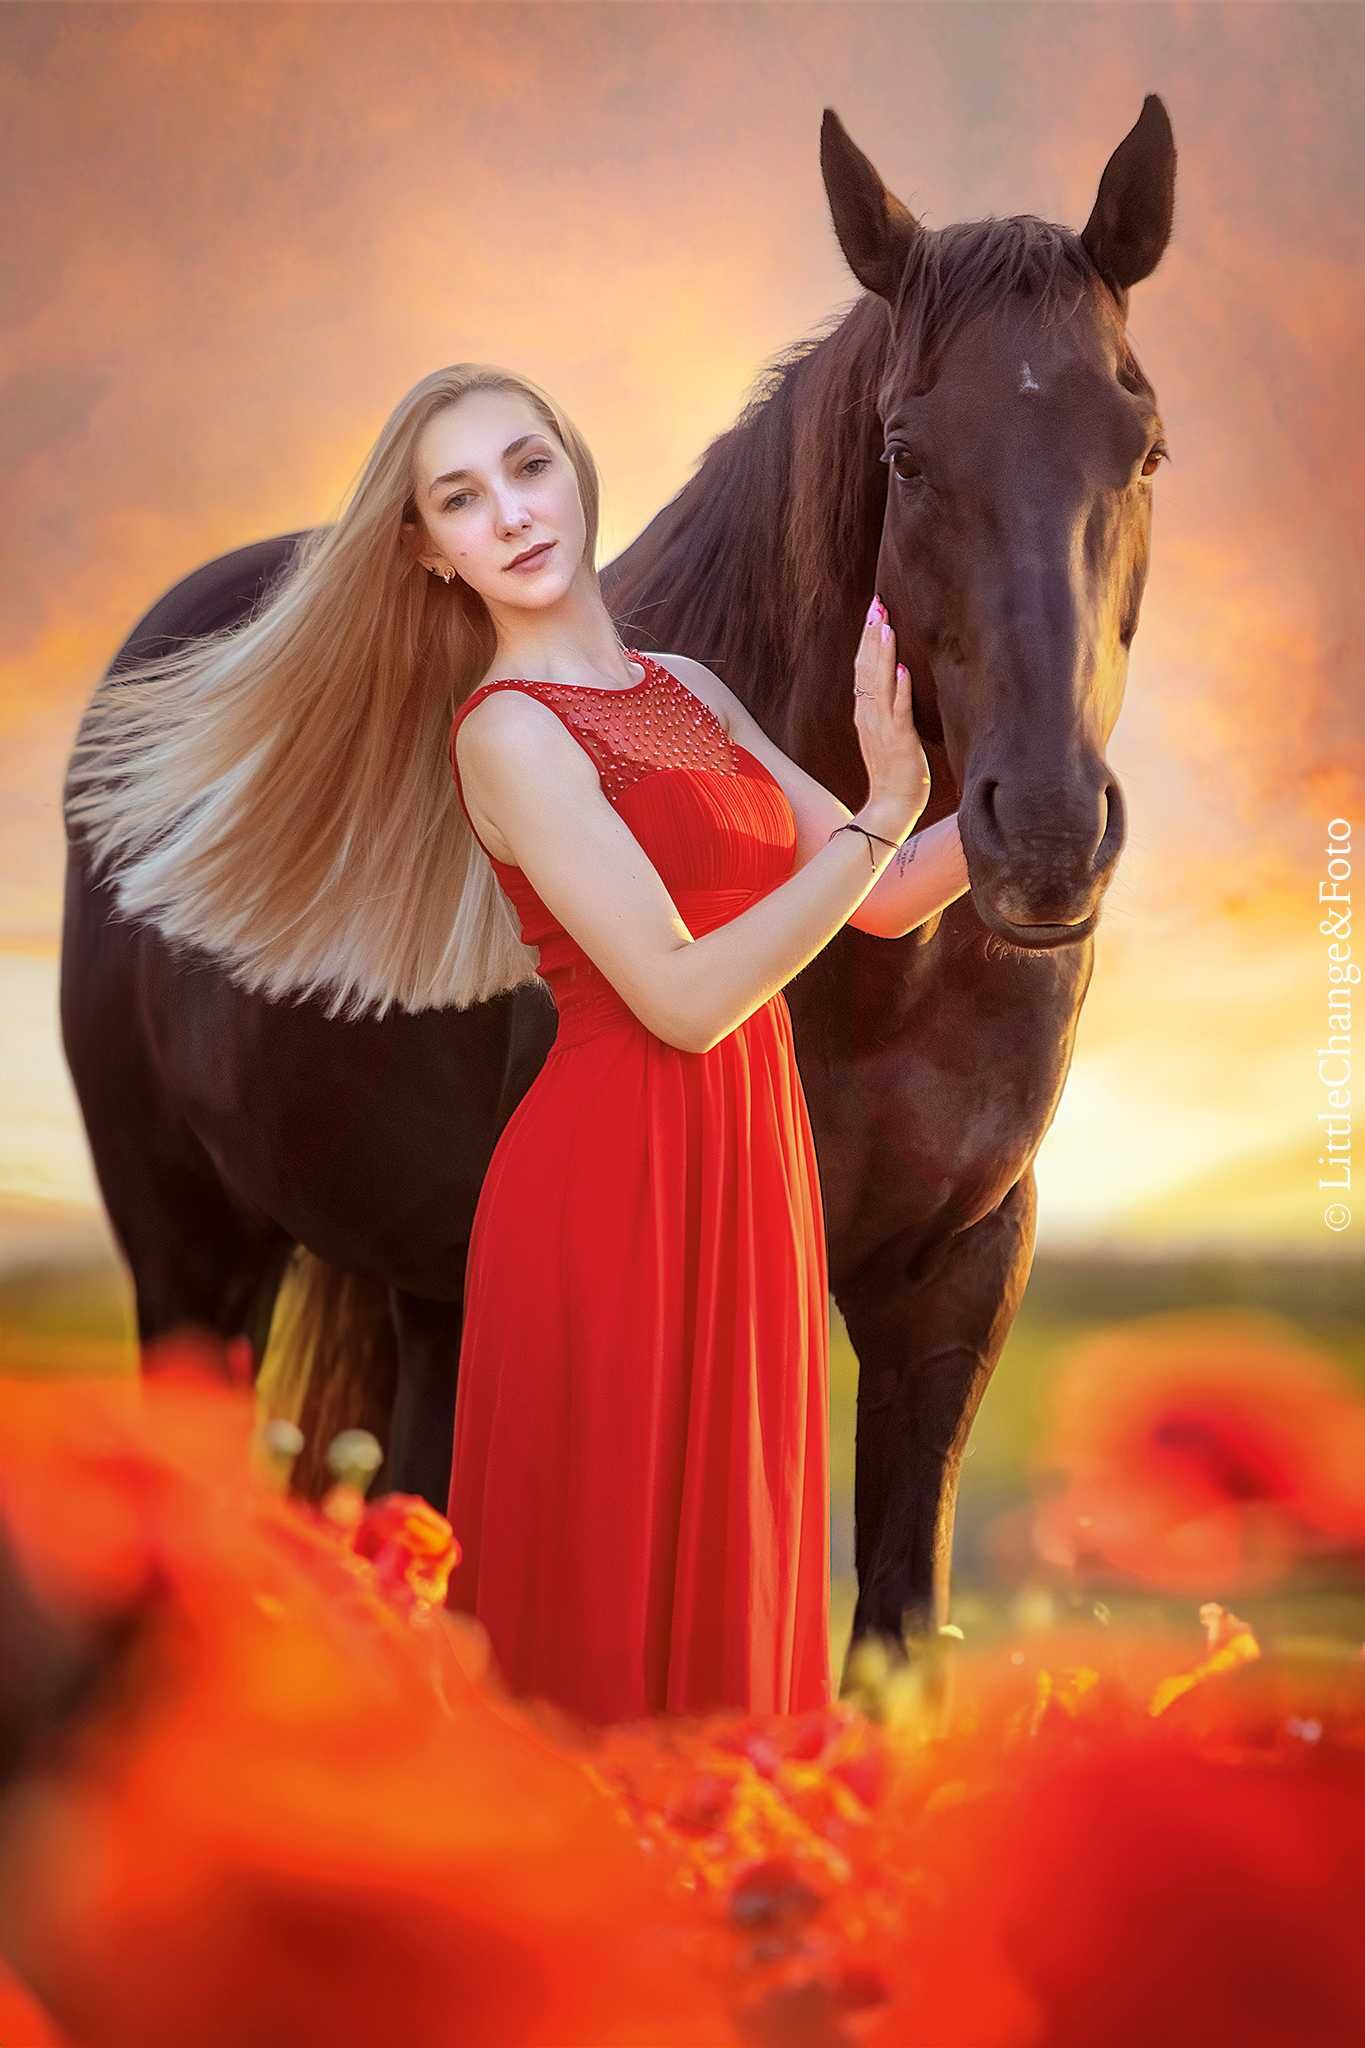 Zdjęcia z koniem. Koń do zdjęć. Fotografia zwierząt. Sesja plenerowa